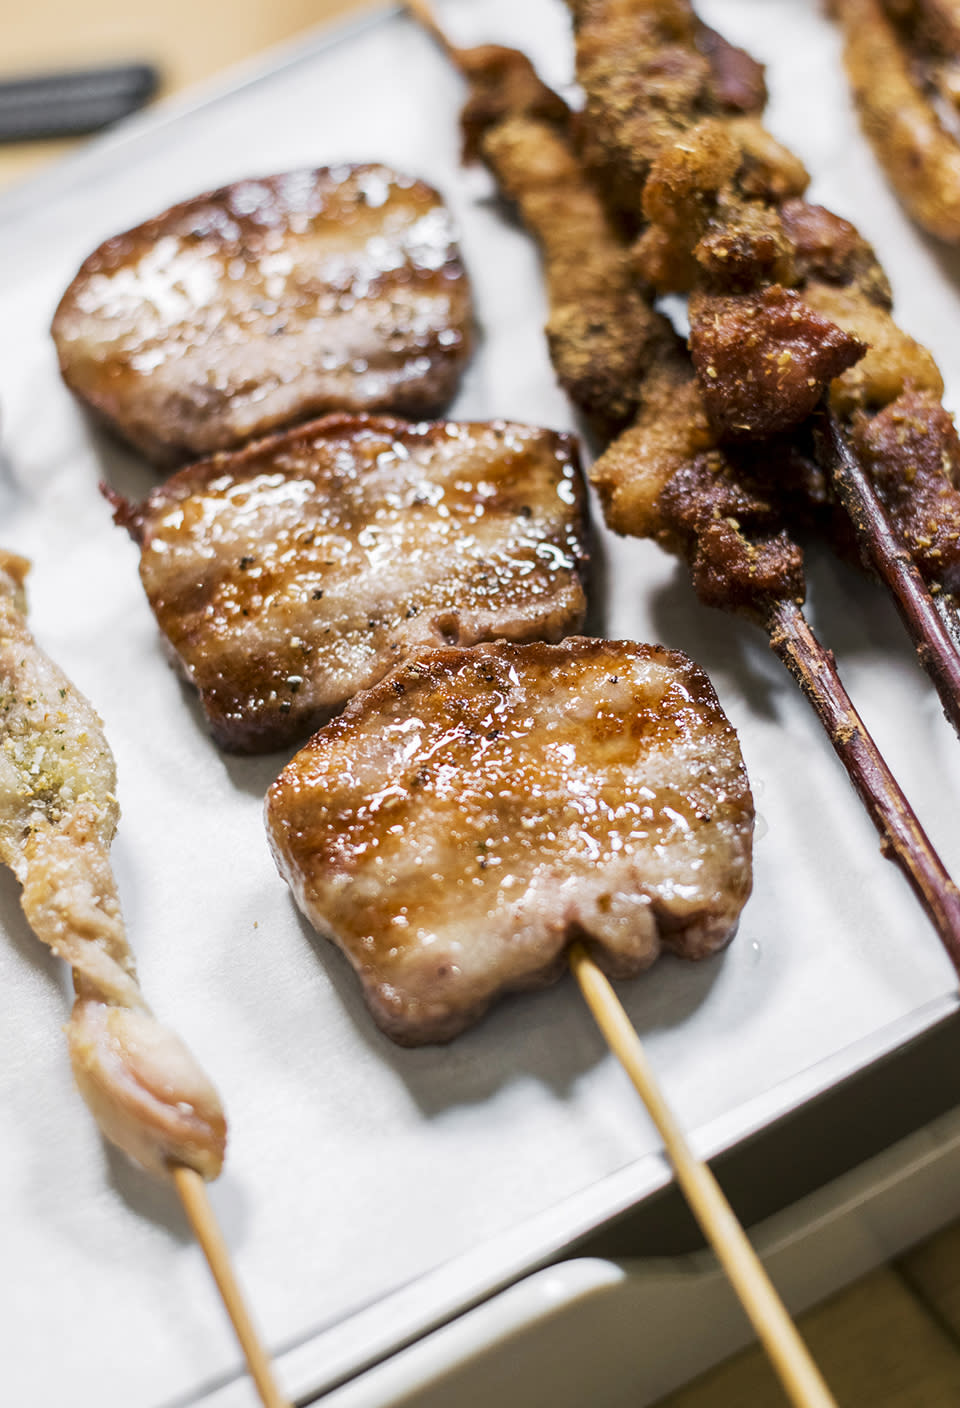 旺角美食︱砵蘭街串燒小店 最平$18羊肉串+招牌滷水燒乳鴿
